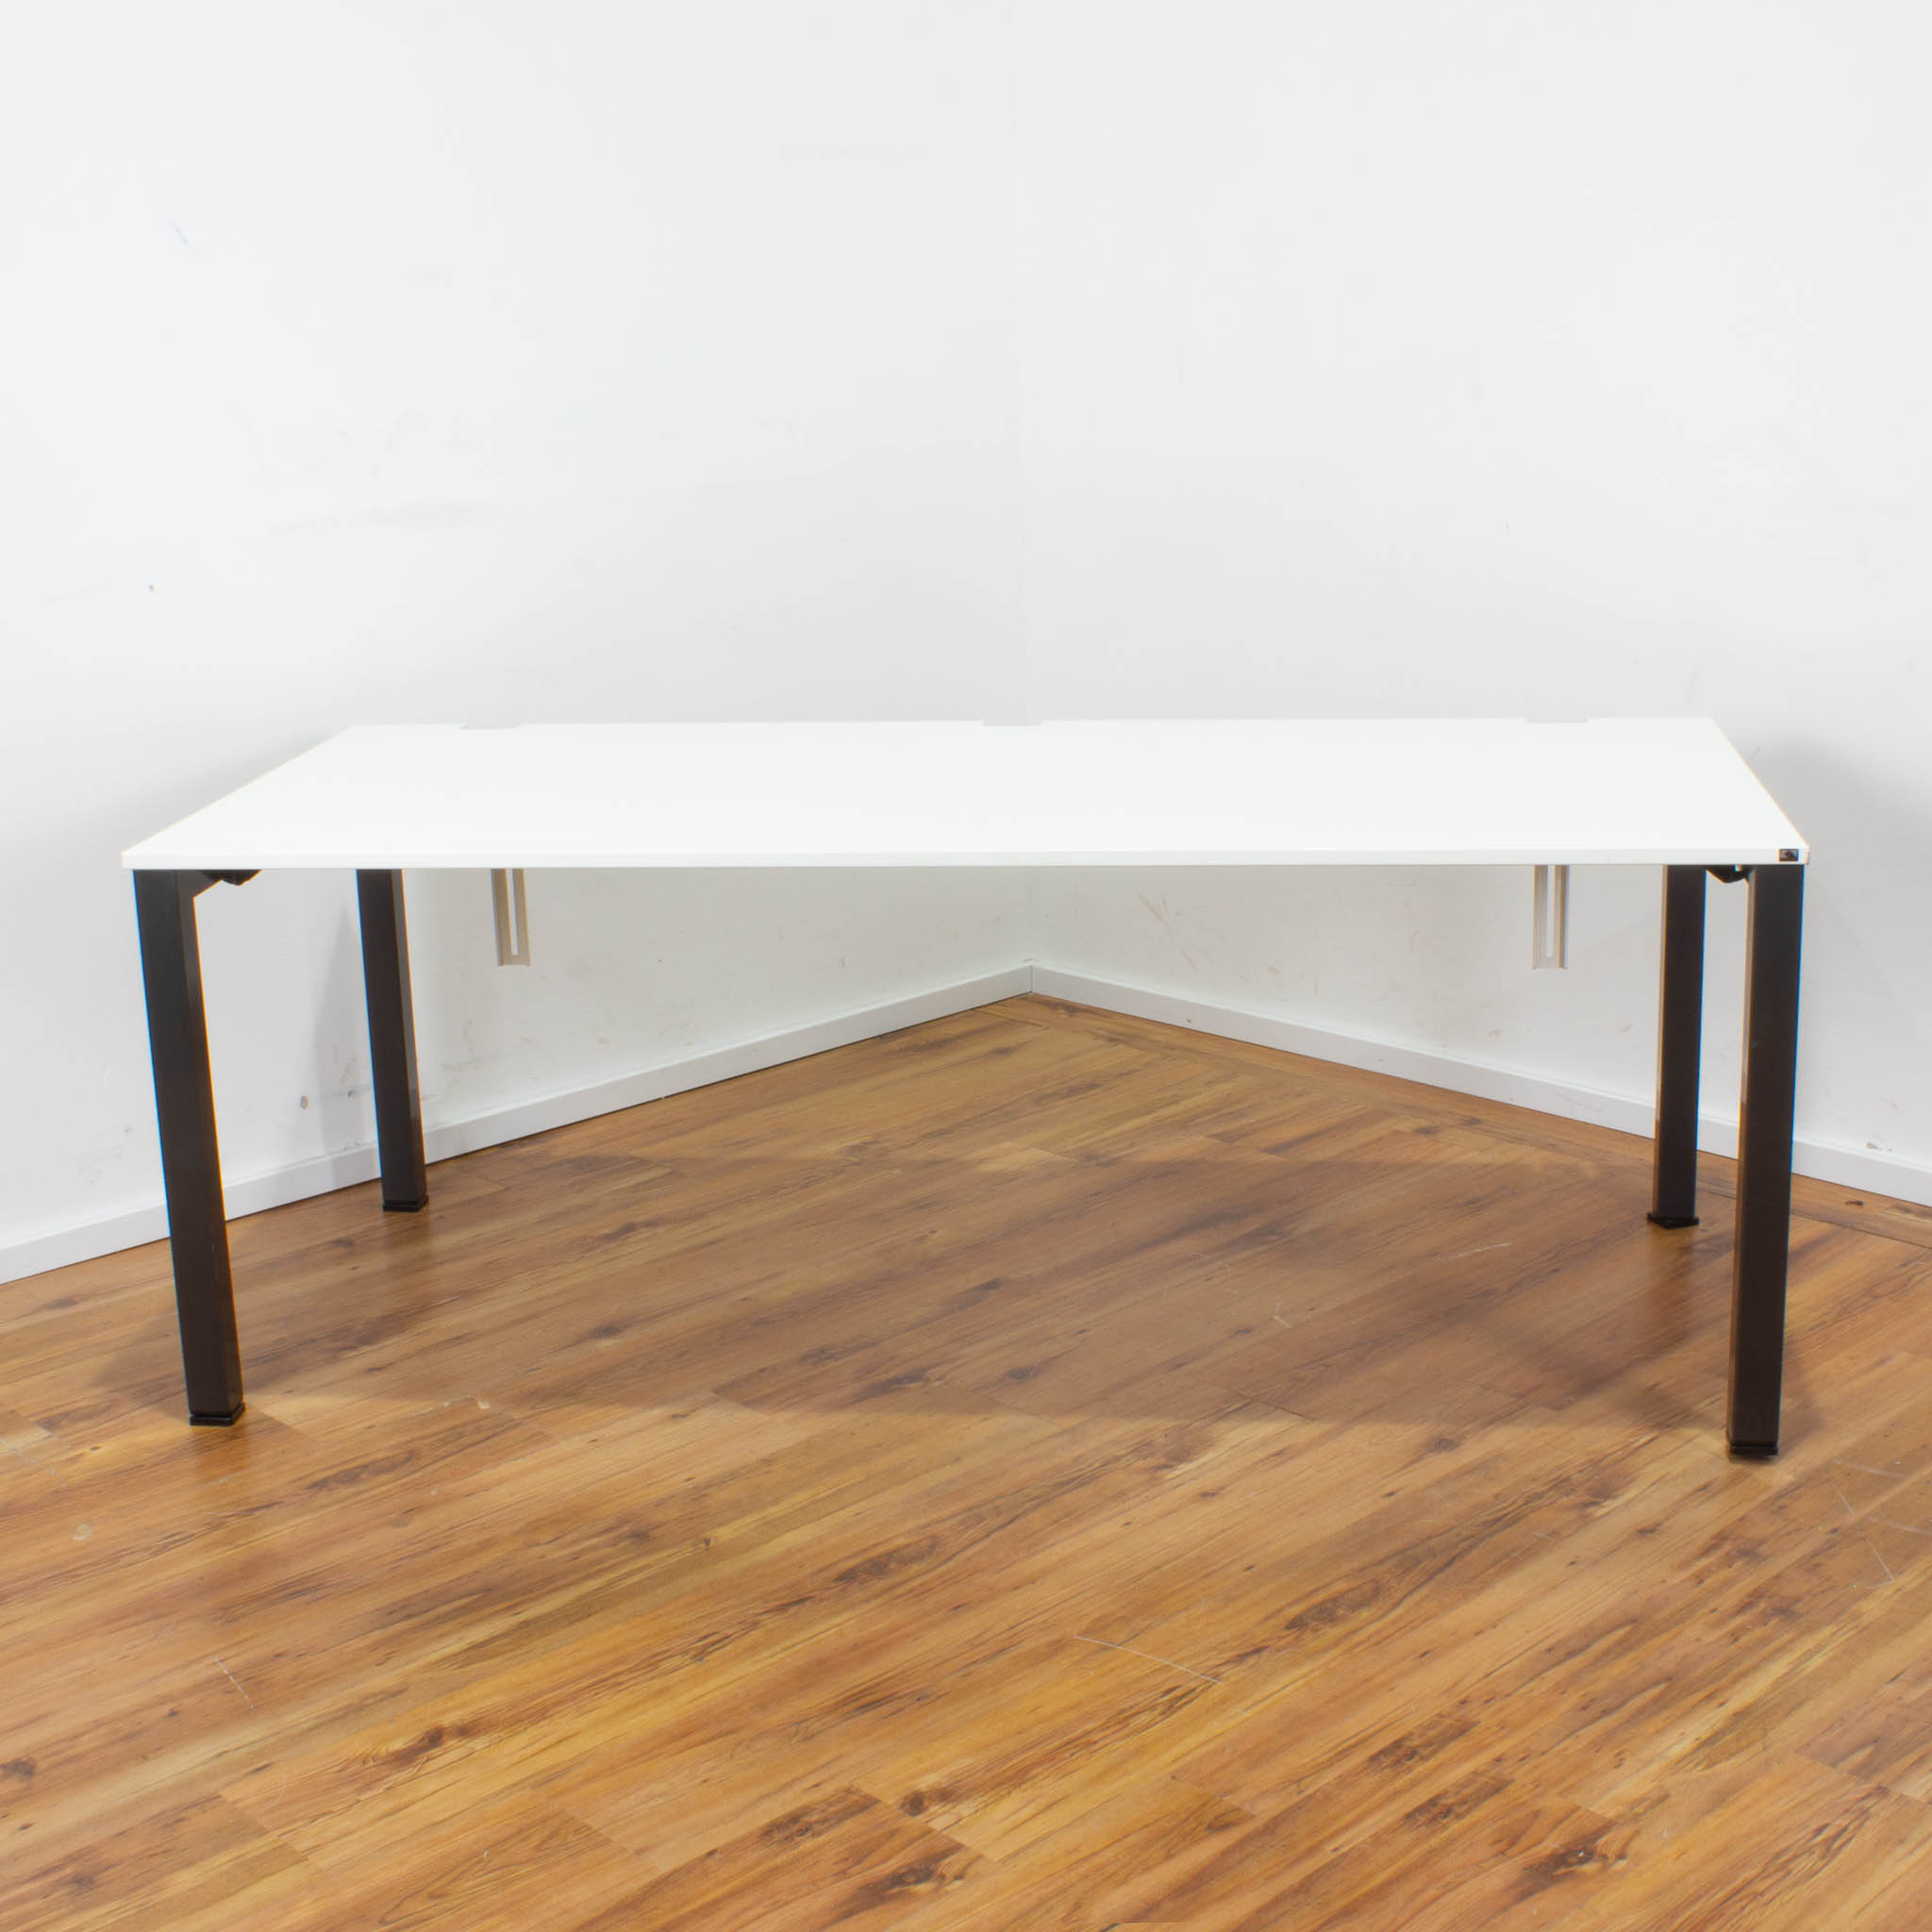 König + Neurath Schreibtisch - 180 x 80 cm - Platte weiß